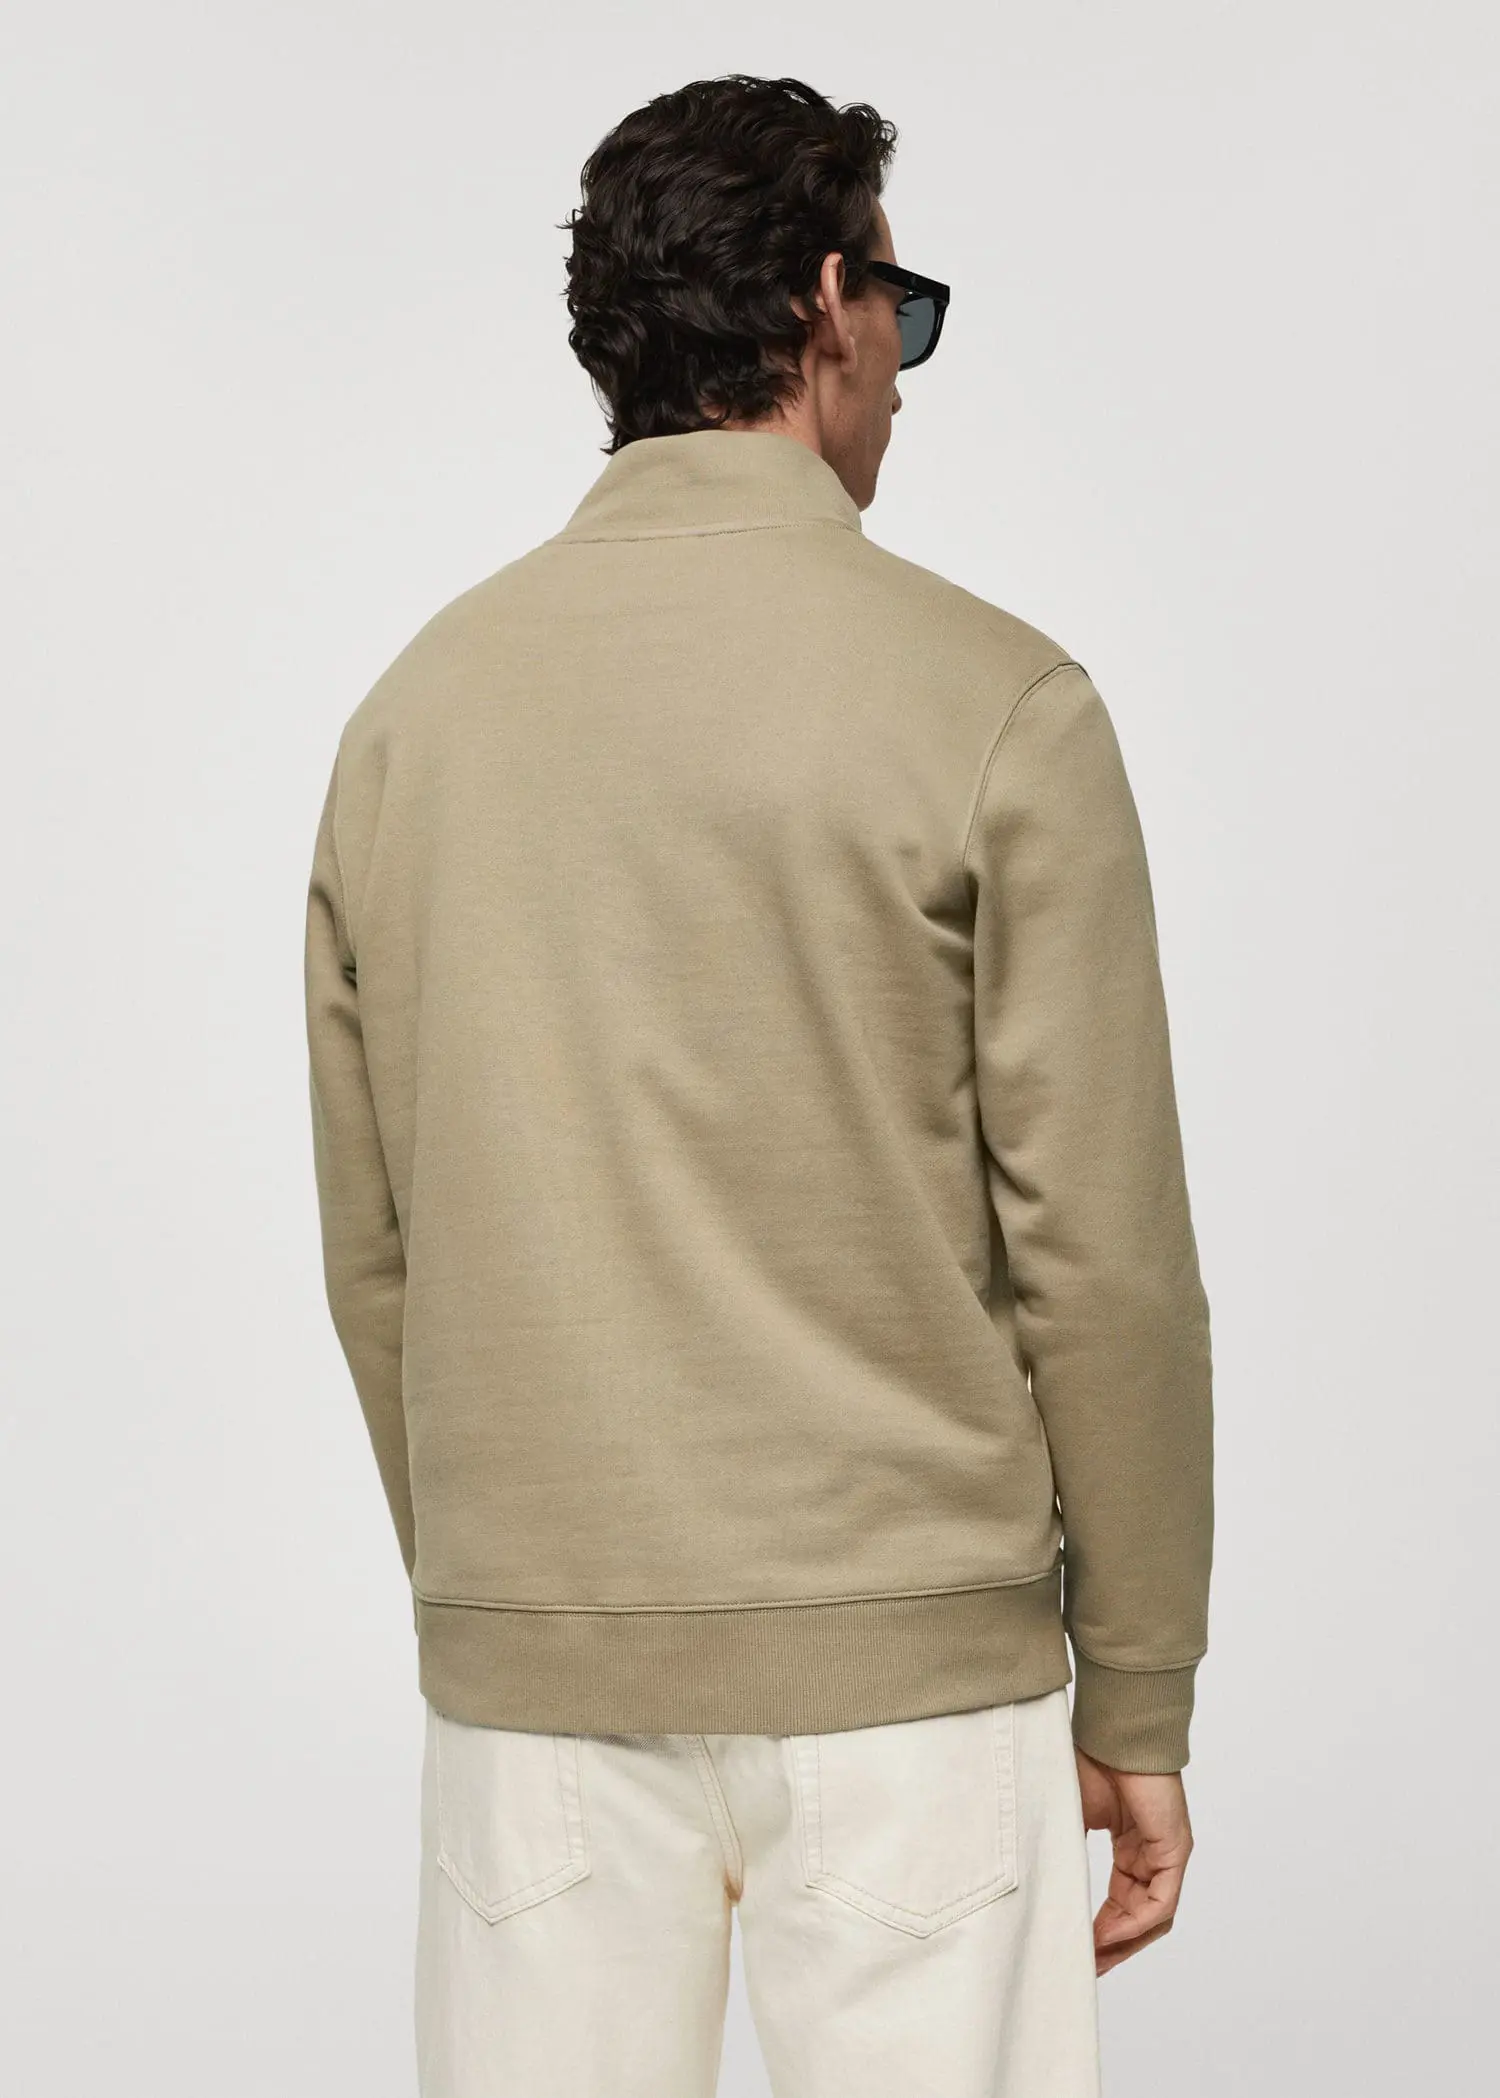 Mango Baumwoll-Sweatshirt mit Reißverschluss. 3